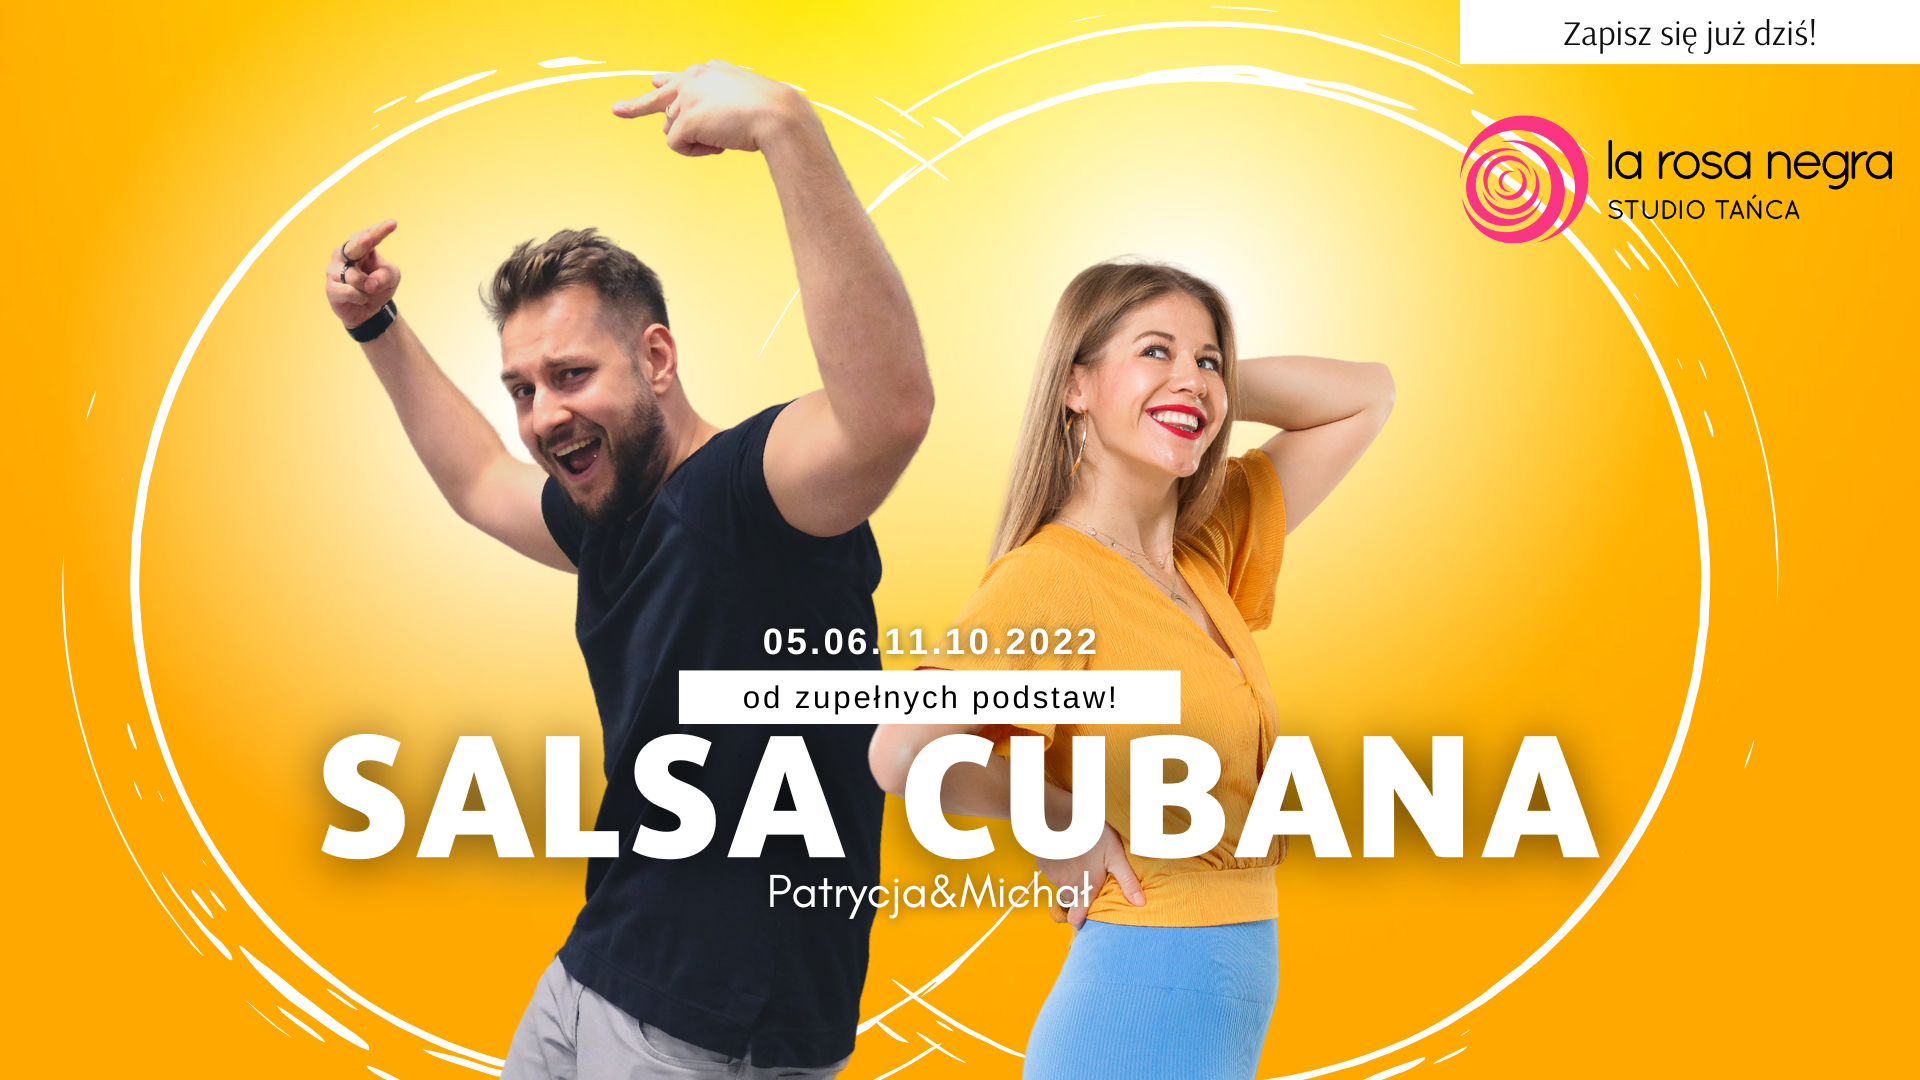 Salsa cubana od podstaw z Patrycją&Michałem - zajęcia weekendowe